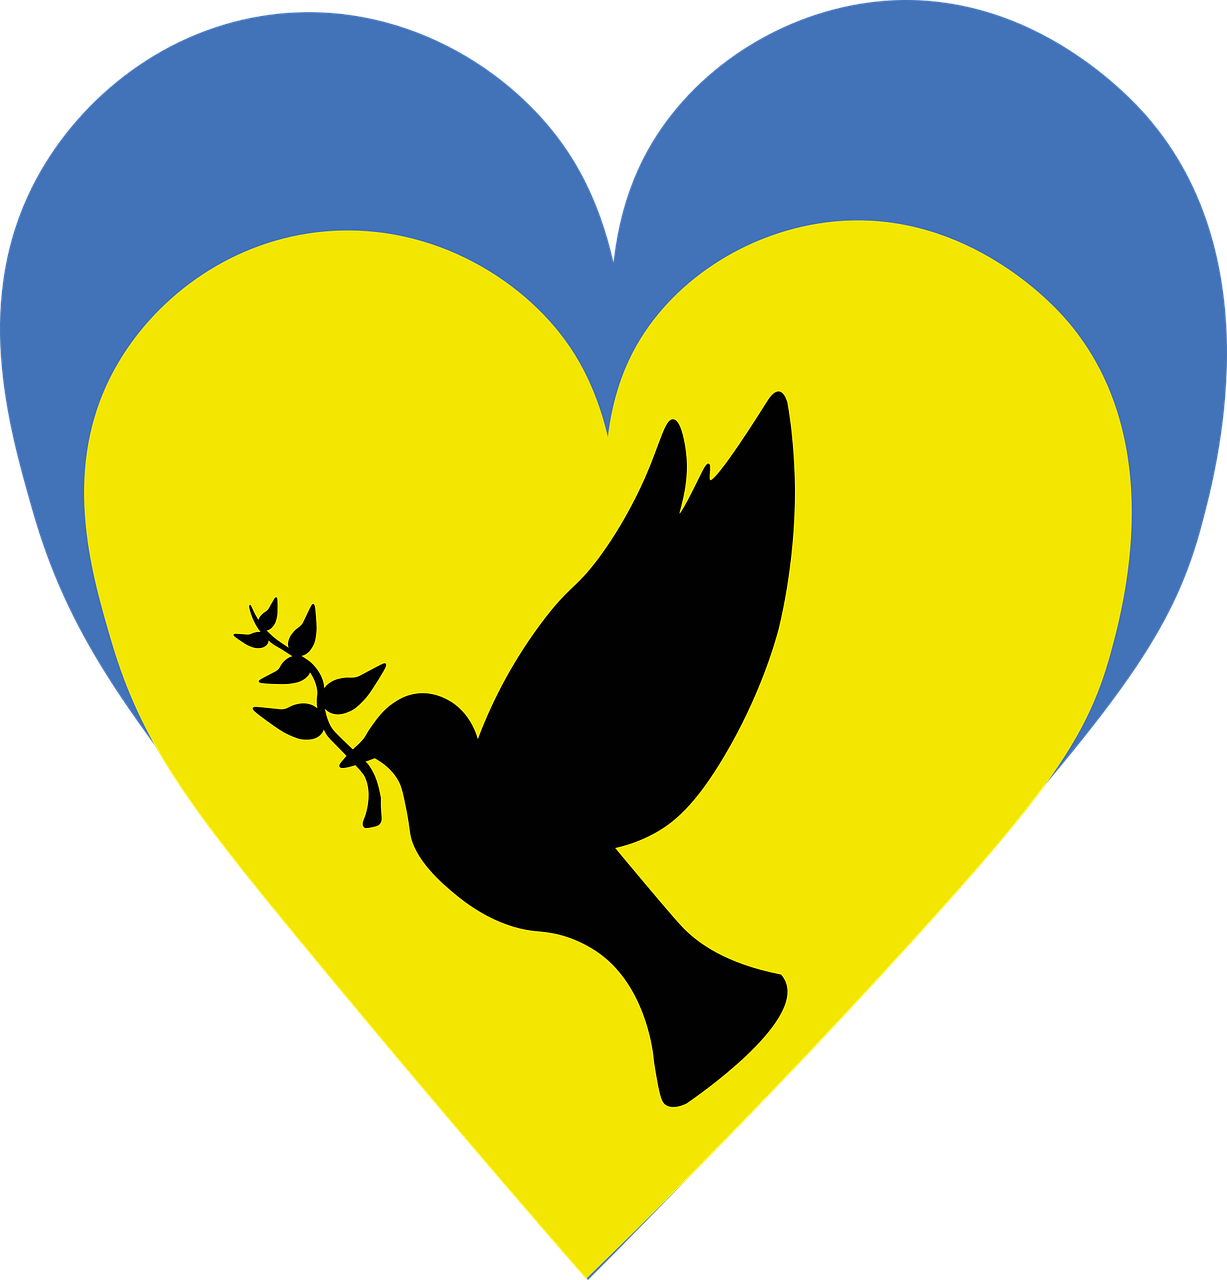 Hjerte, med farger inspirert av det ukrainske flagget i blått og gult. Due med olivenkvist i nebbet. Foto: Ill.foto/Pixabay